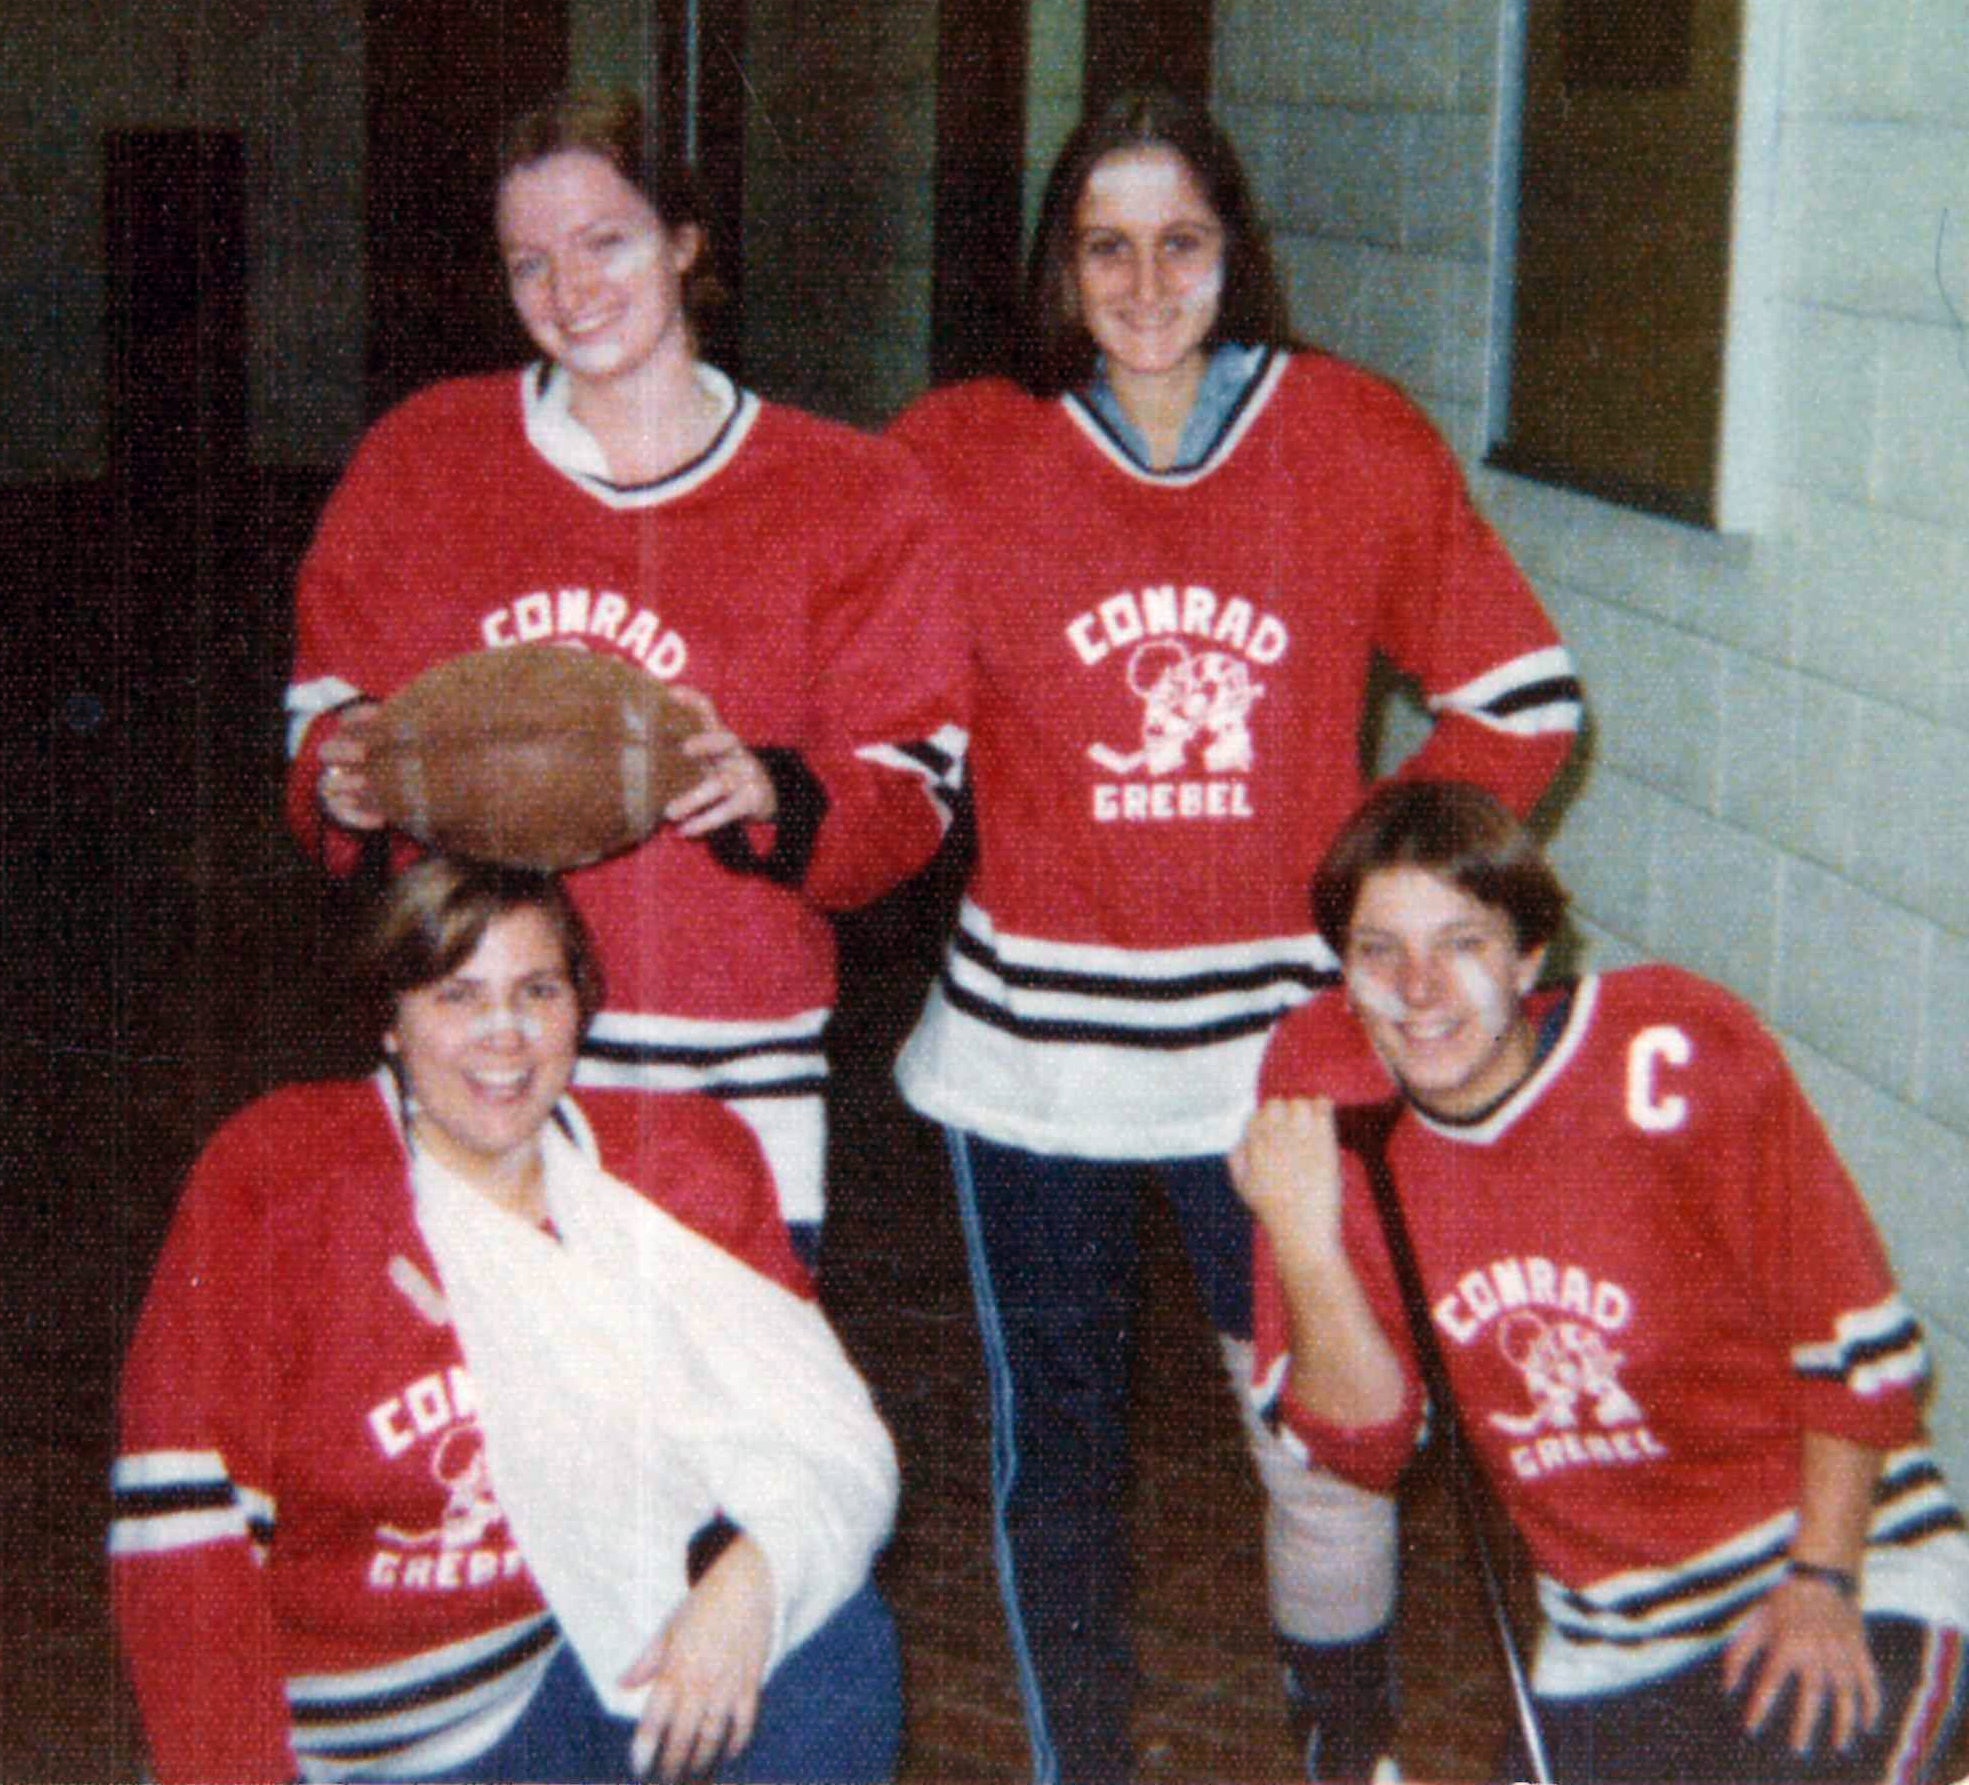 Hockey players at Grebel